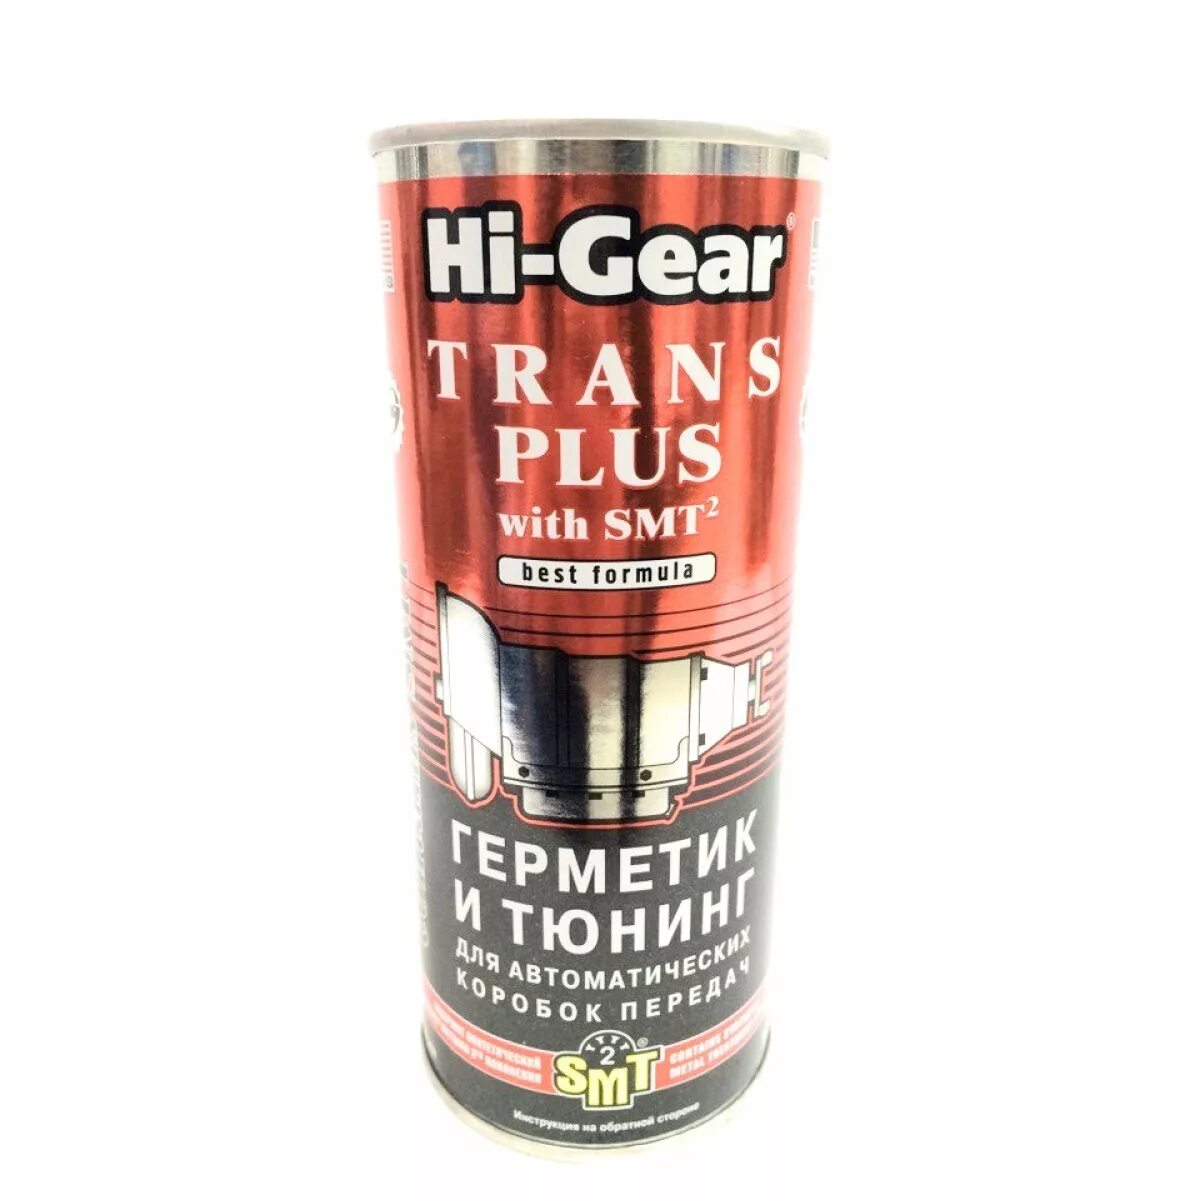 Hi Gear герметик трансмиссионный. Герметик радиатора Hi-Gear hg9029 (444 мл). Присадка HIGEAR для МККПП. Хай Гир присадка АКПП герметик. Герметик для коробок